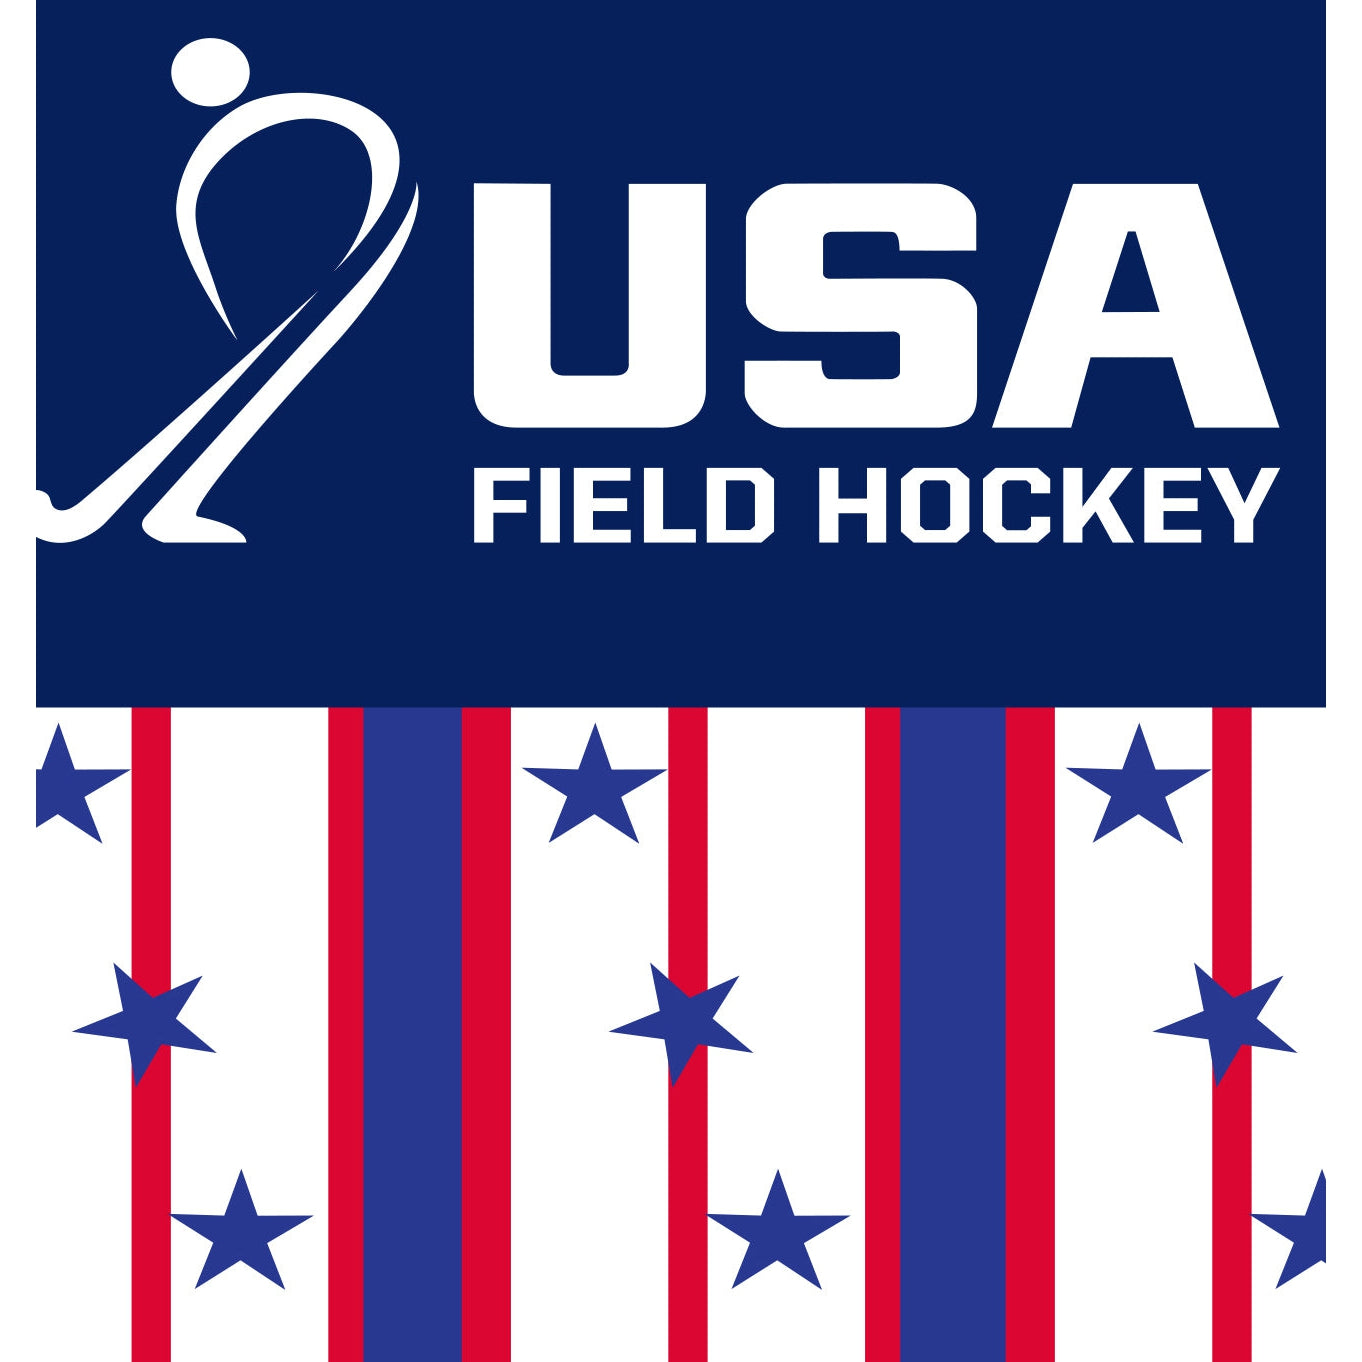 USA Field Hockey Stripes Socks